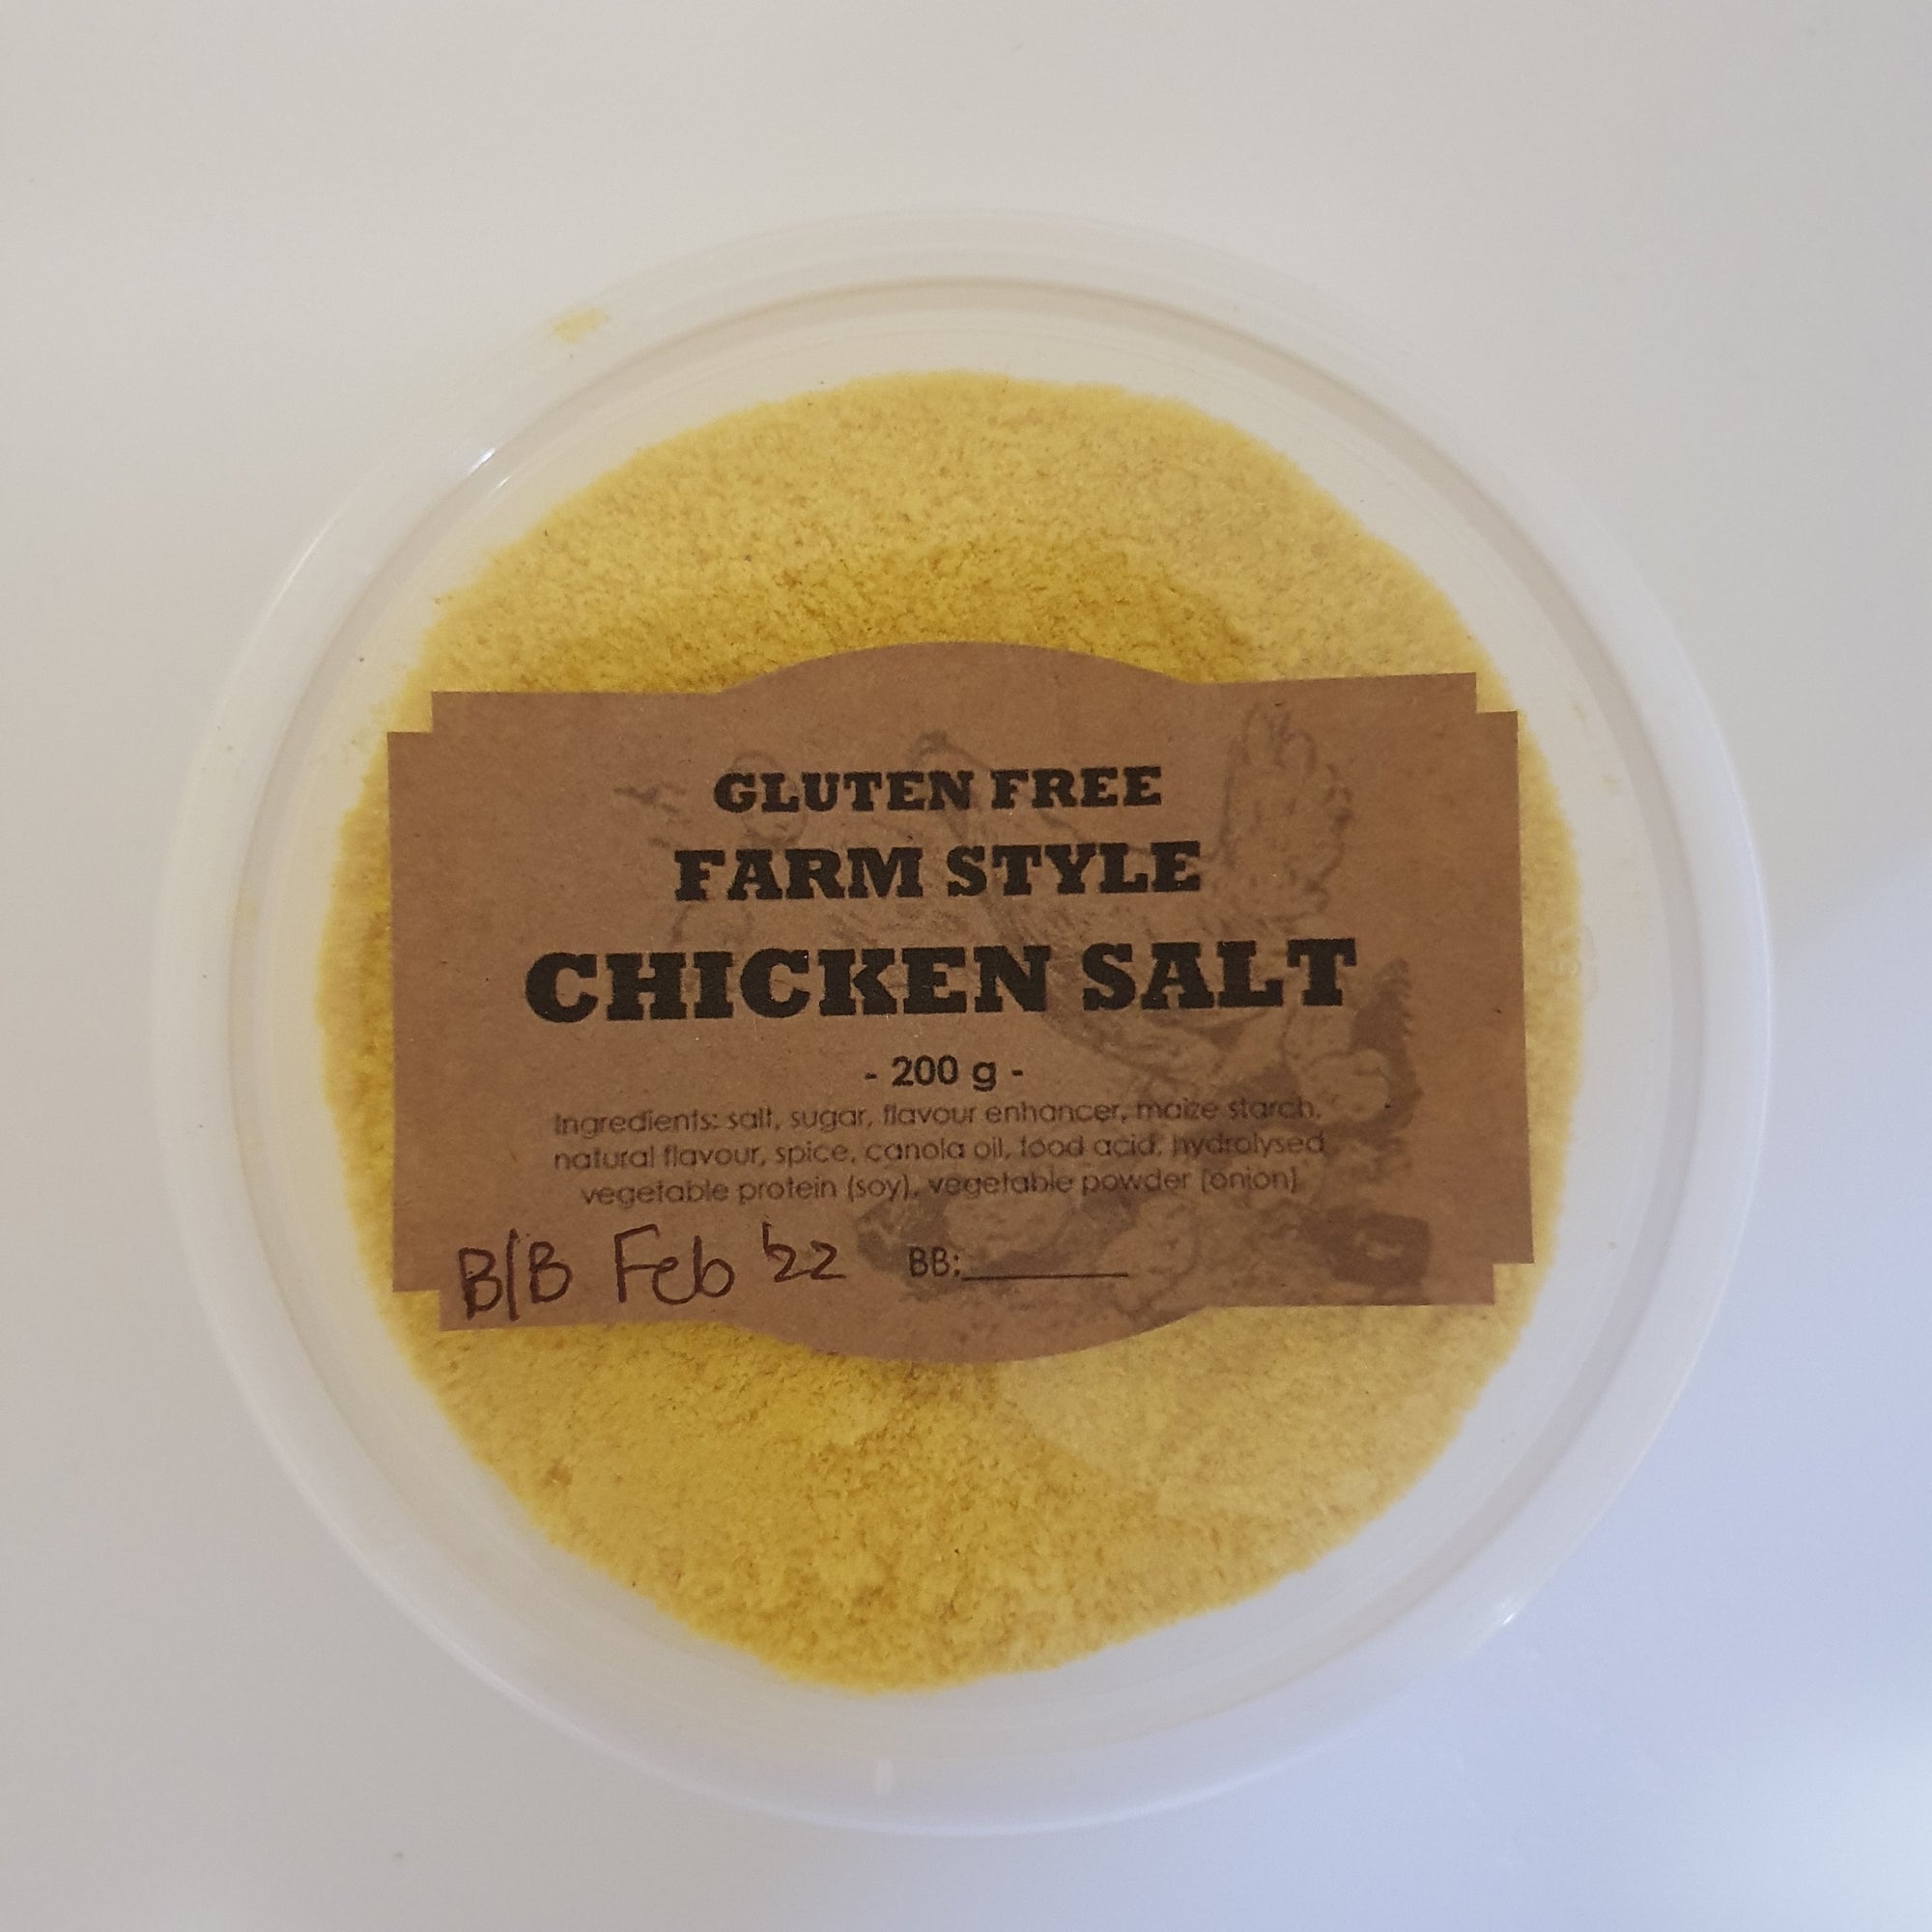 Farm Style Chicken Salt Gluten Free 200g